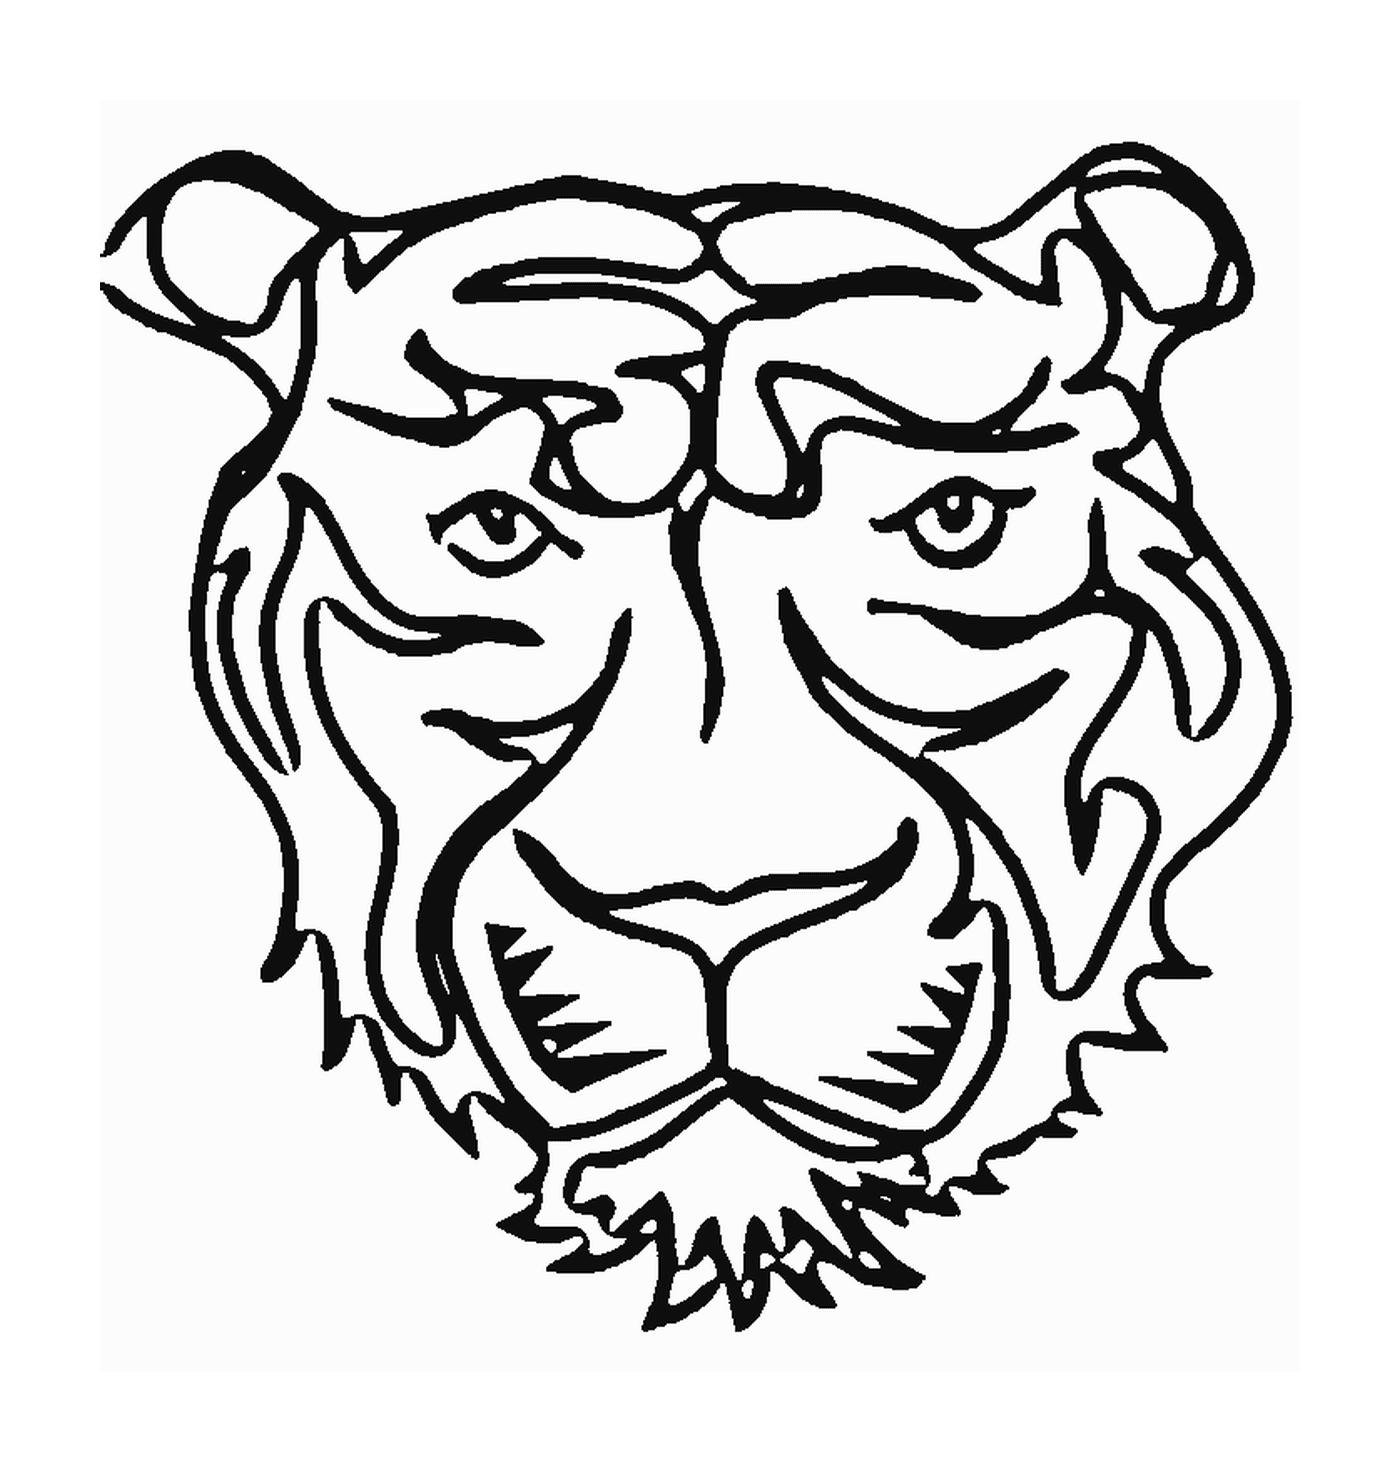  सामने से एक बाघ का सिर 